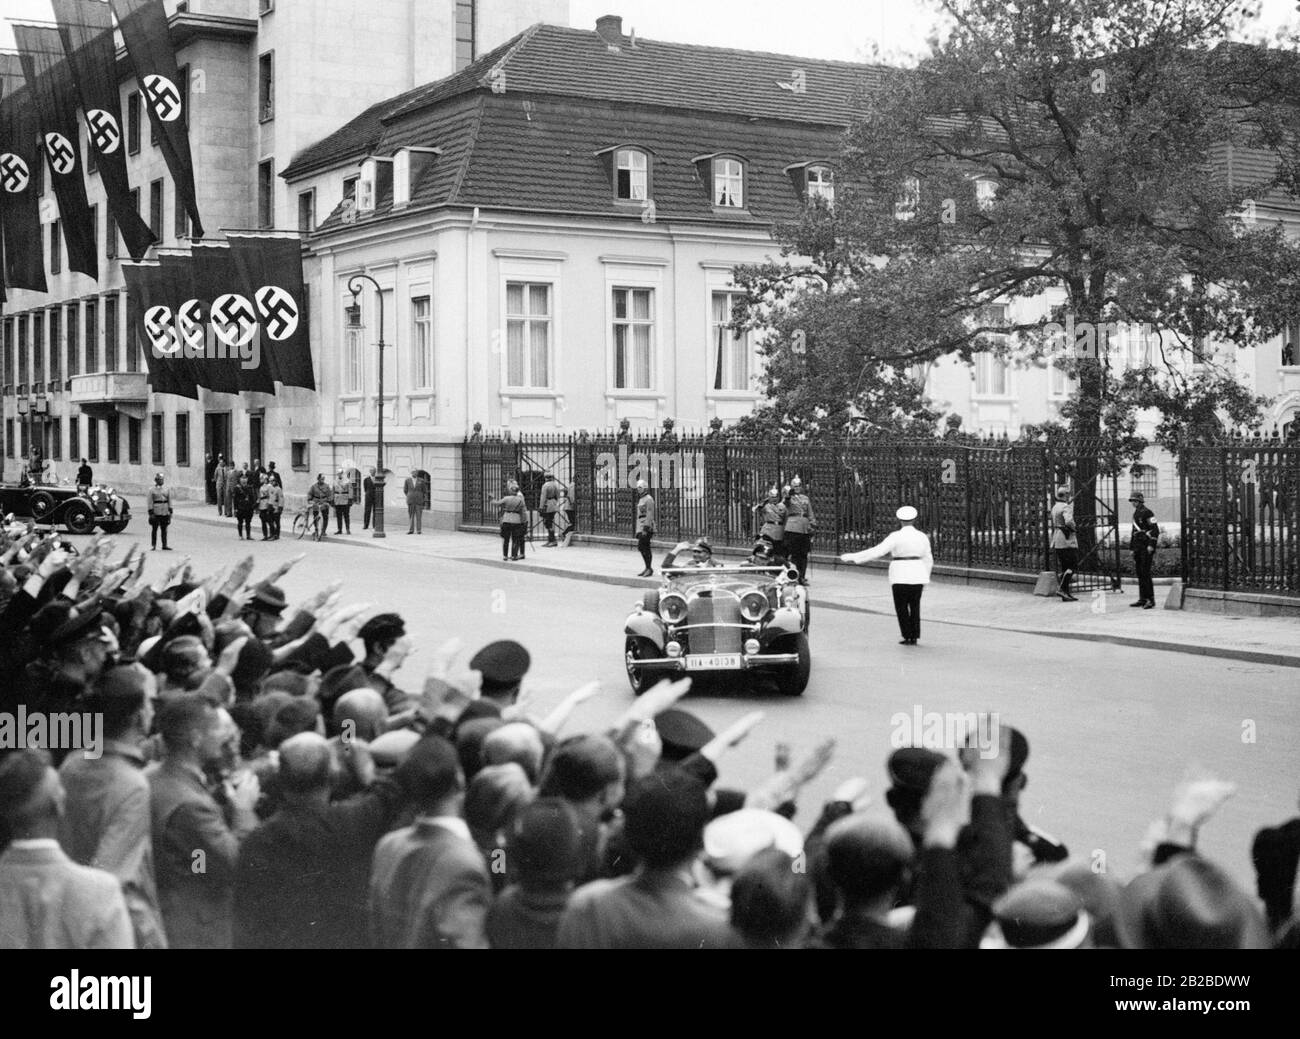 Der Stellvertreter von Adolf Hitler, Rudolf Heß, verlässt die Staatskanzlei, um zu den Olympischen Spielen im Reichsportfeld in Berlin zu gehen. Menschenmassen zeigen ihm den Nazi-Salut, als er die Staatskanzlei in seinem Auto verlässt. Stockfoto